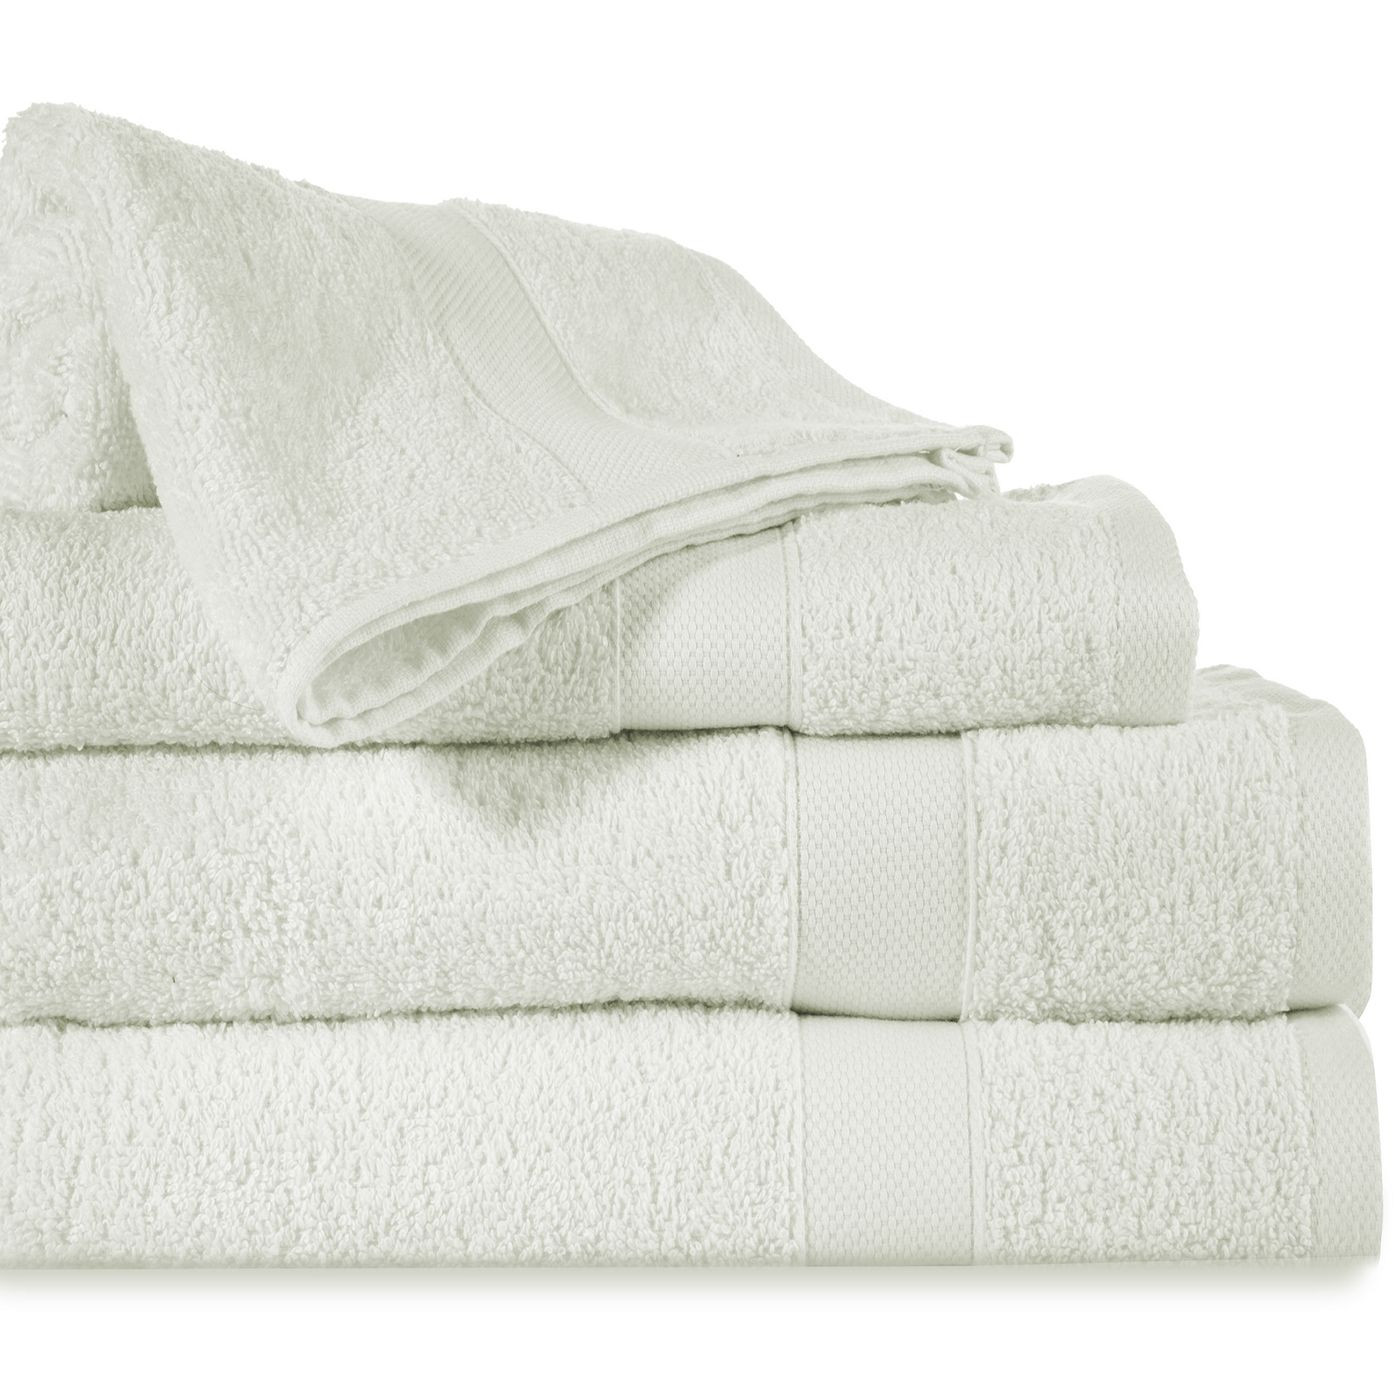 Miękki chłonny ręcznik kąpielowy kremowy 70x140